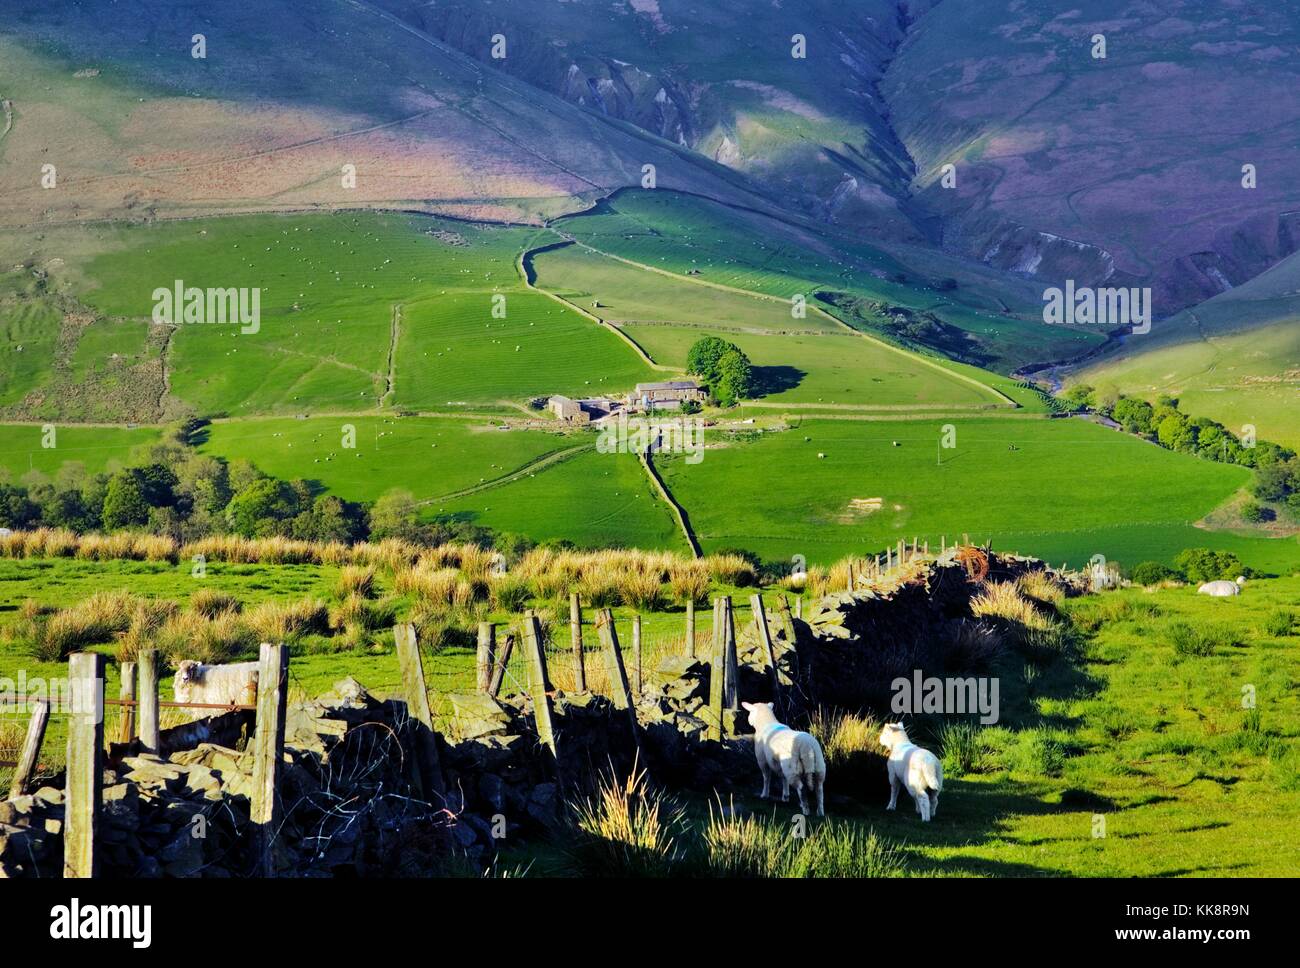 Des moutons paissant sur Hill Farm dans le Cumbria Fells cap sud, à l'Est, 2 miles au sud de tebay, dans le Lake District, UK Angleterre du nord Banque D'Images